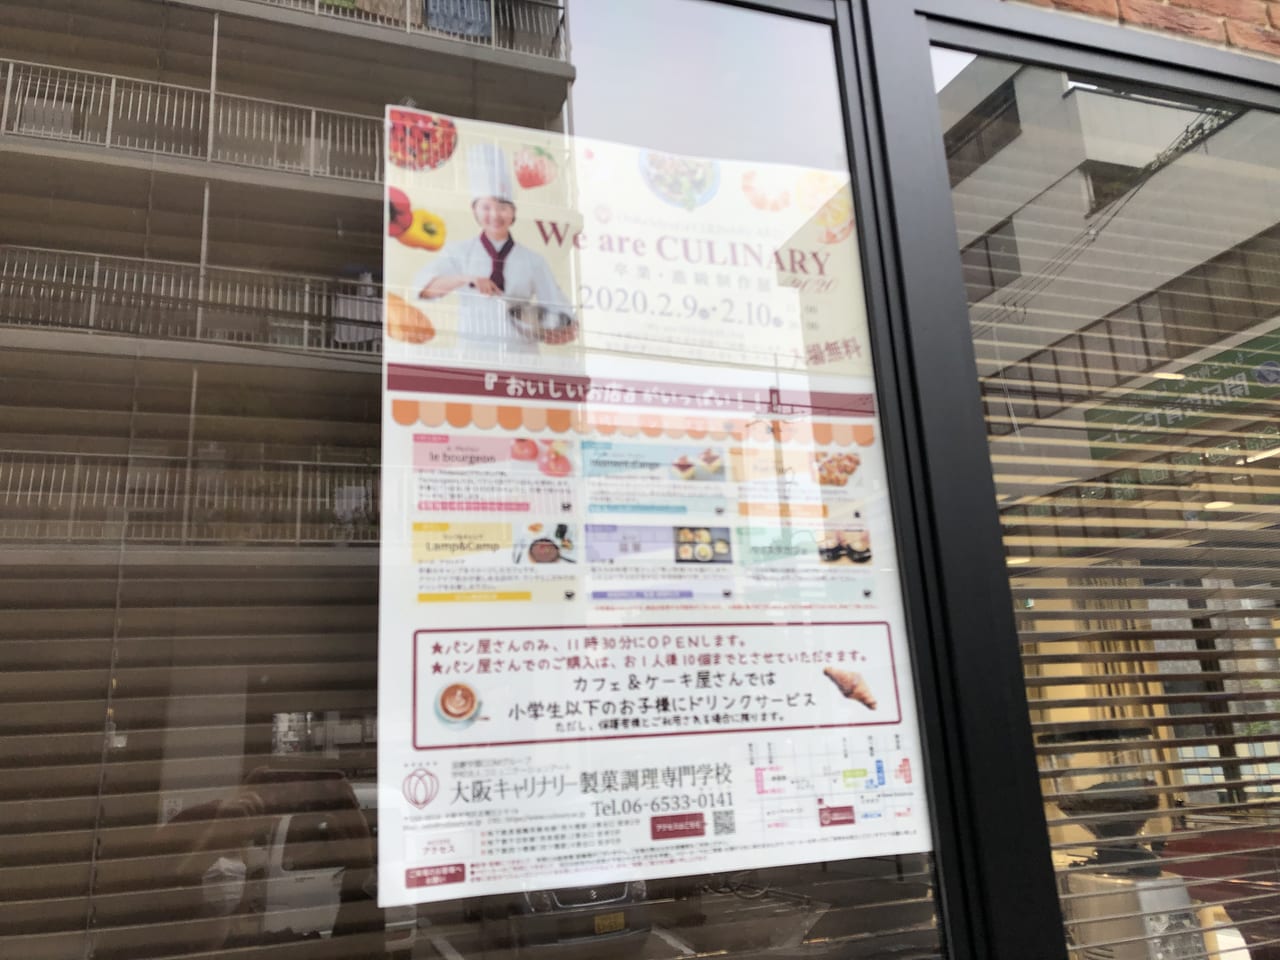 大阪市西区 北堀江 大阪キャリナリー製菓調理専門学校で令和2年2月9 10日の2日間ショップフェスタが開催されます 号外net 大阪市西区